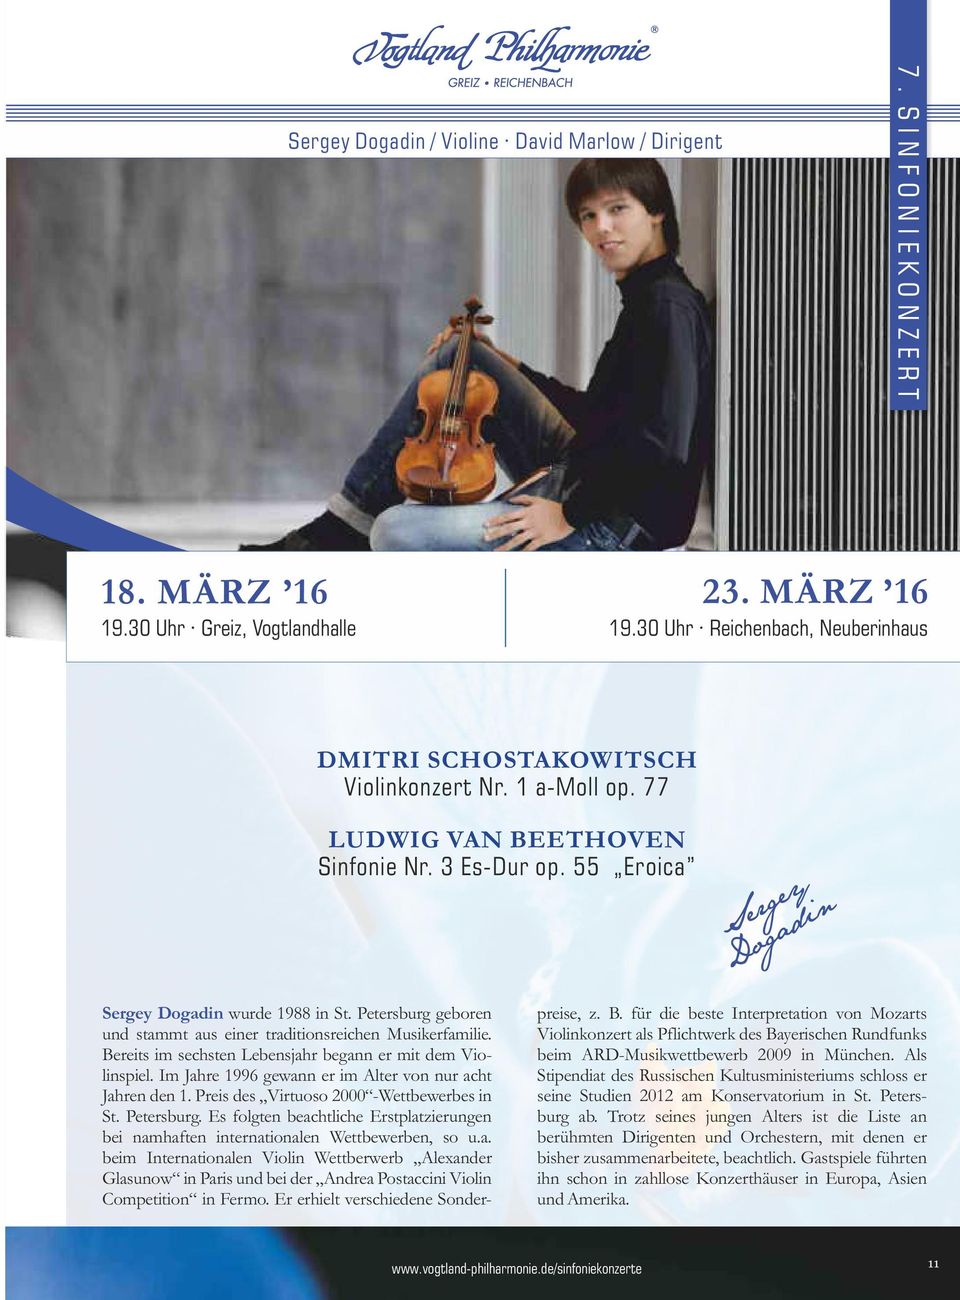 Bereits im sechsten Lebensjahr begann er mit dem Violinspiel. Im Jahre 1996 gewann er im Alter von nur acht Jahren den 1. Preis des Virtuoso 2000 -Wettbewerbes in St. Petersburg.